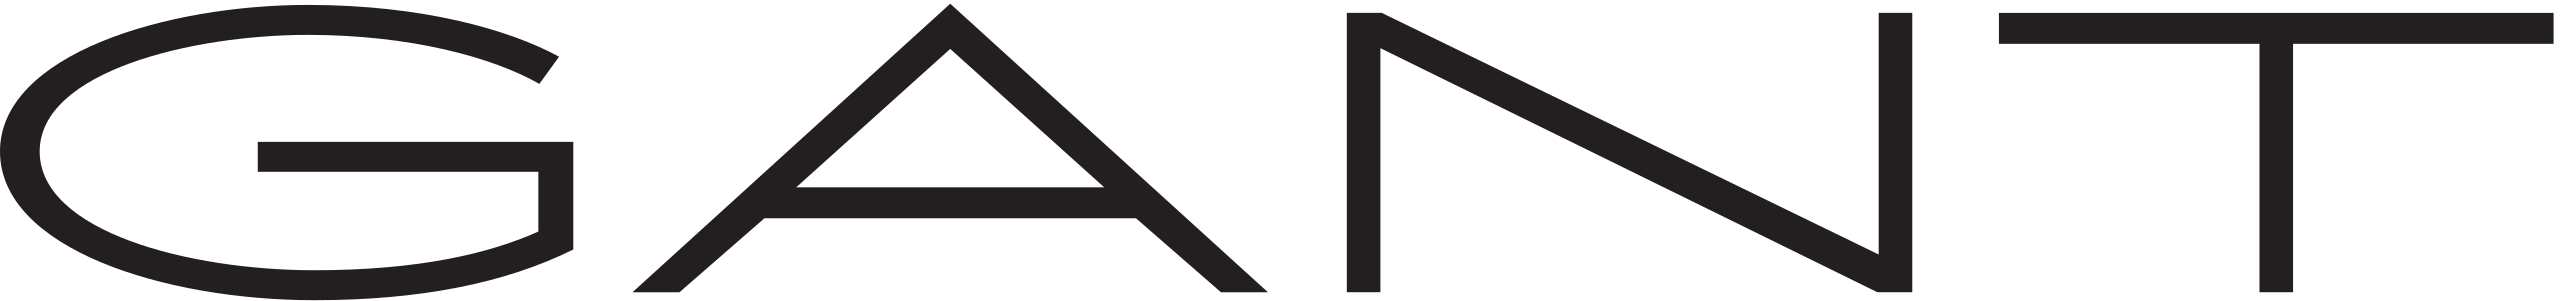 2560px-Gant_logo.svg